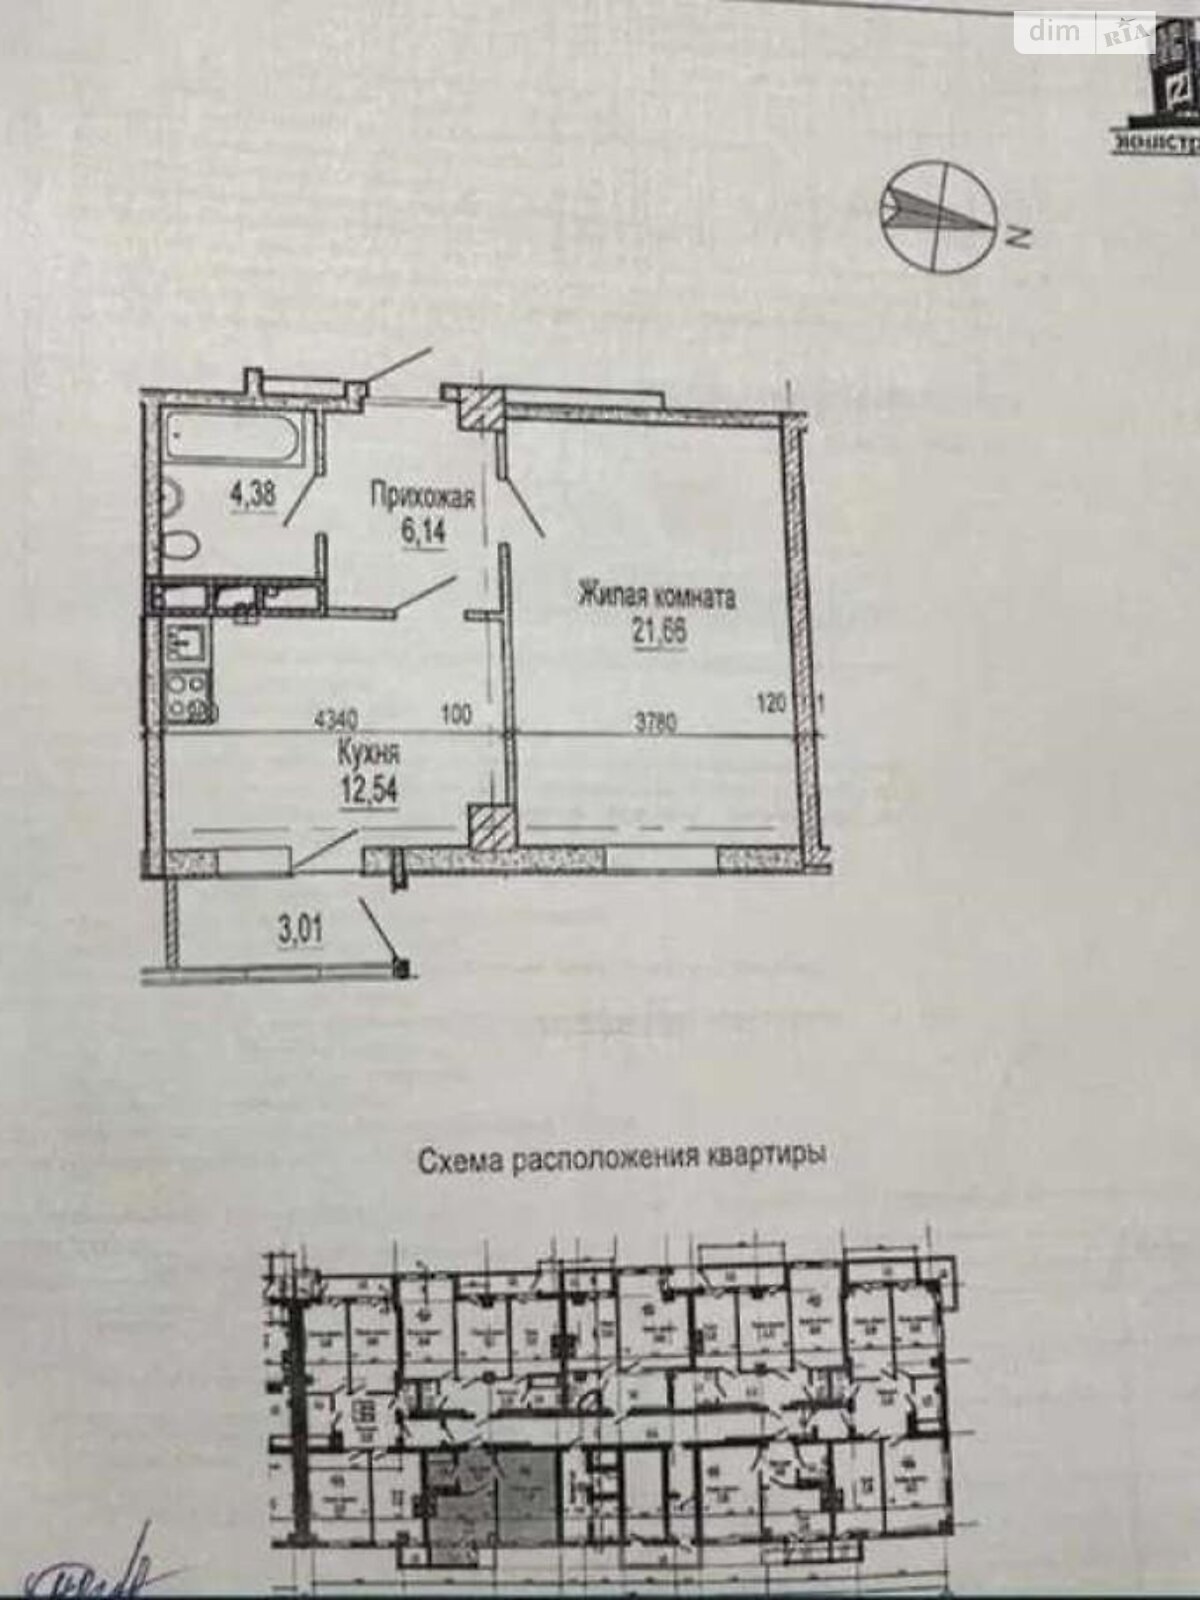 Продажа однокомнатной квартиры в Харькове, на ул. Клочковская 117, район Павловка фото 1